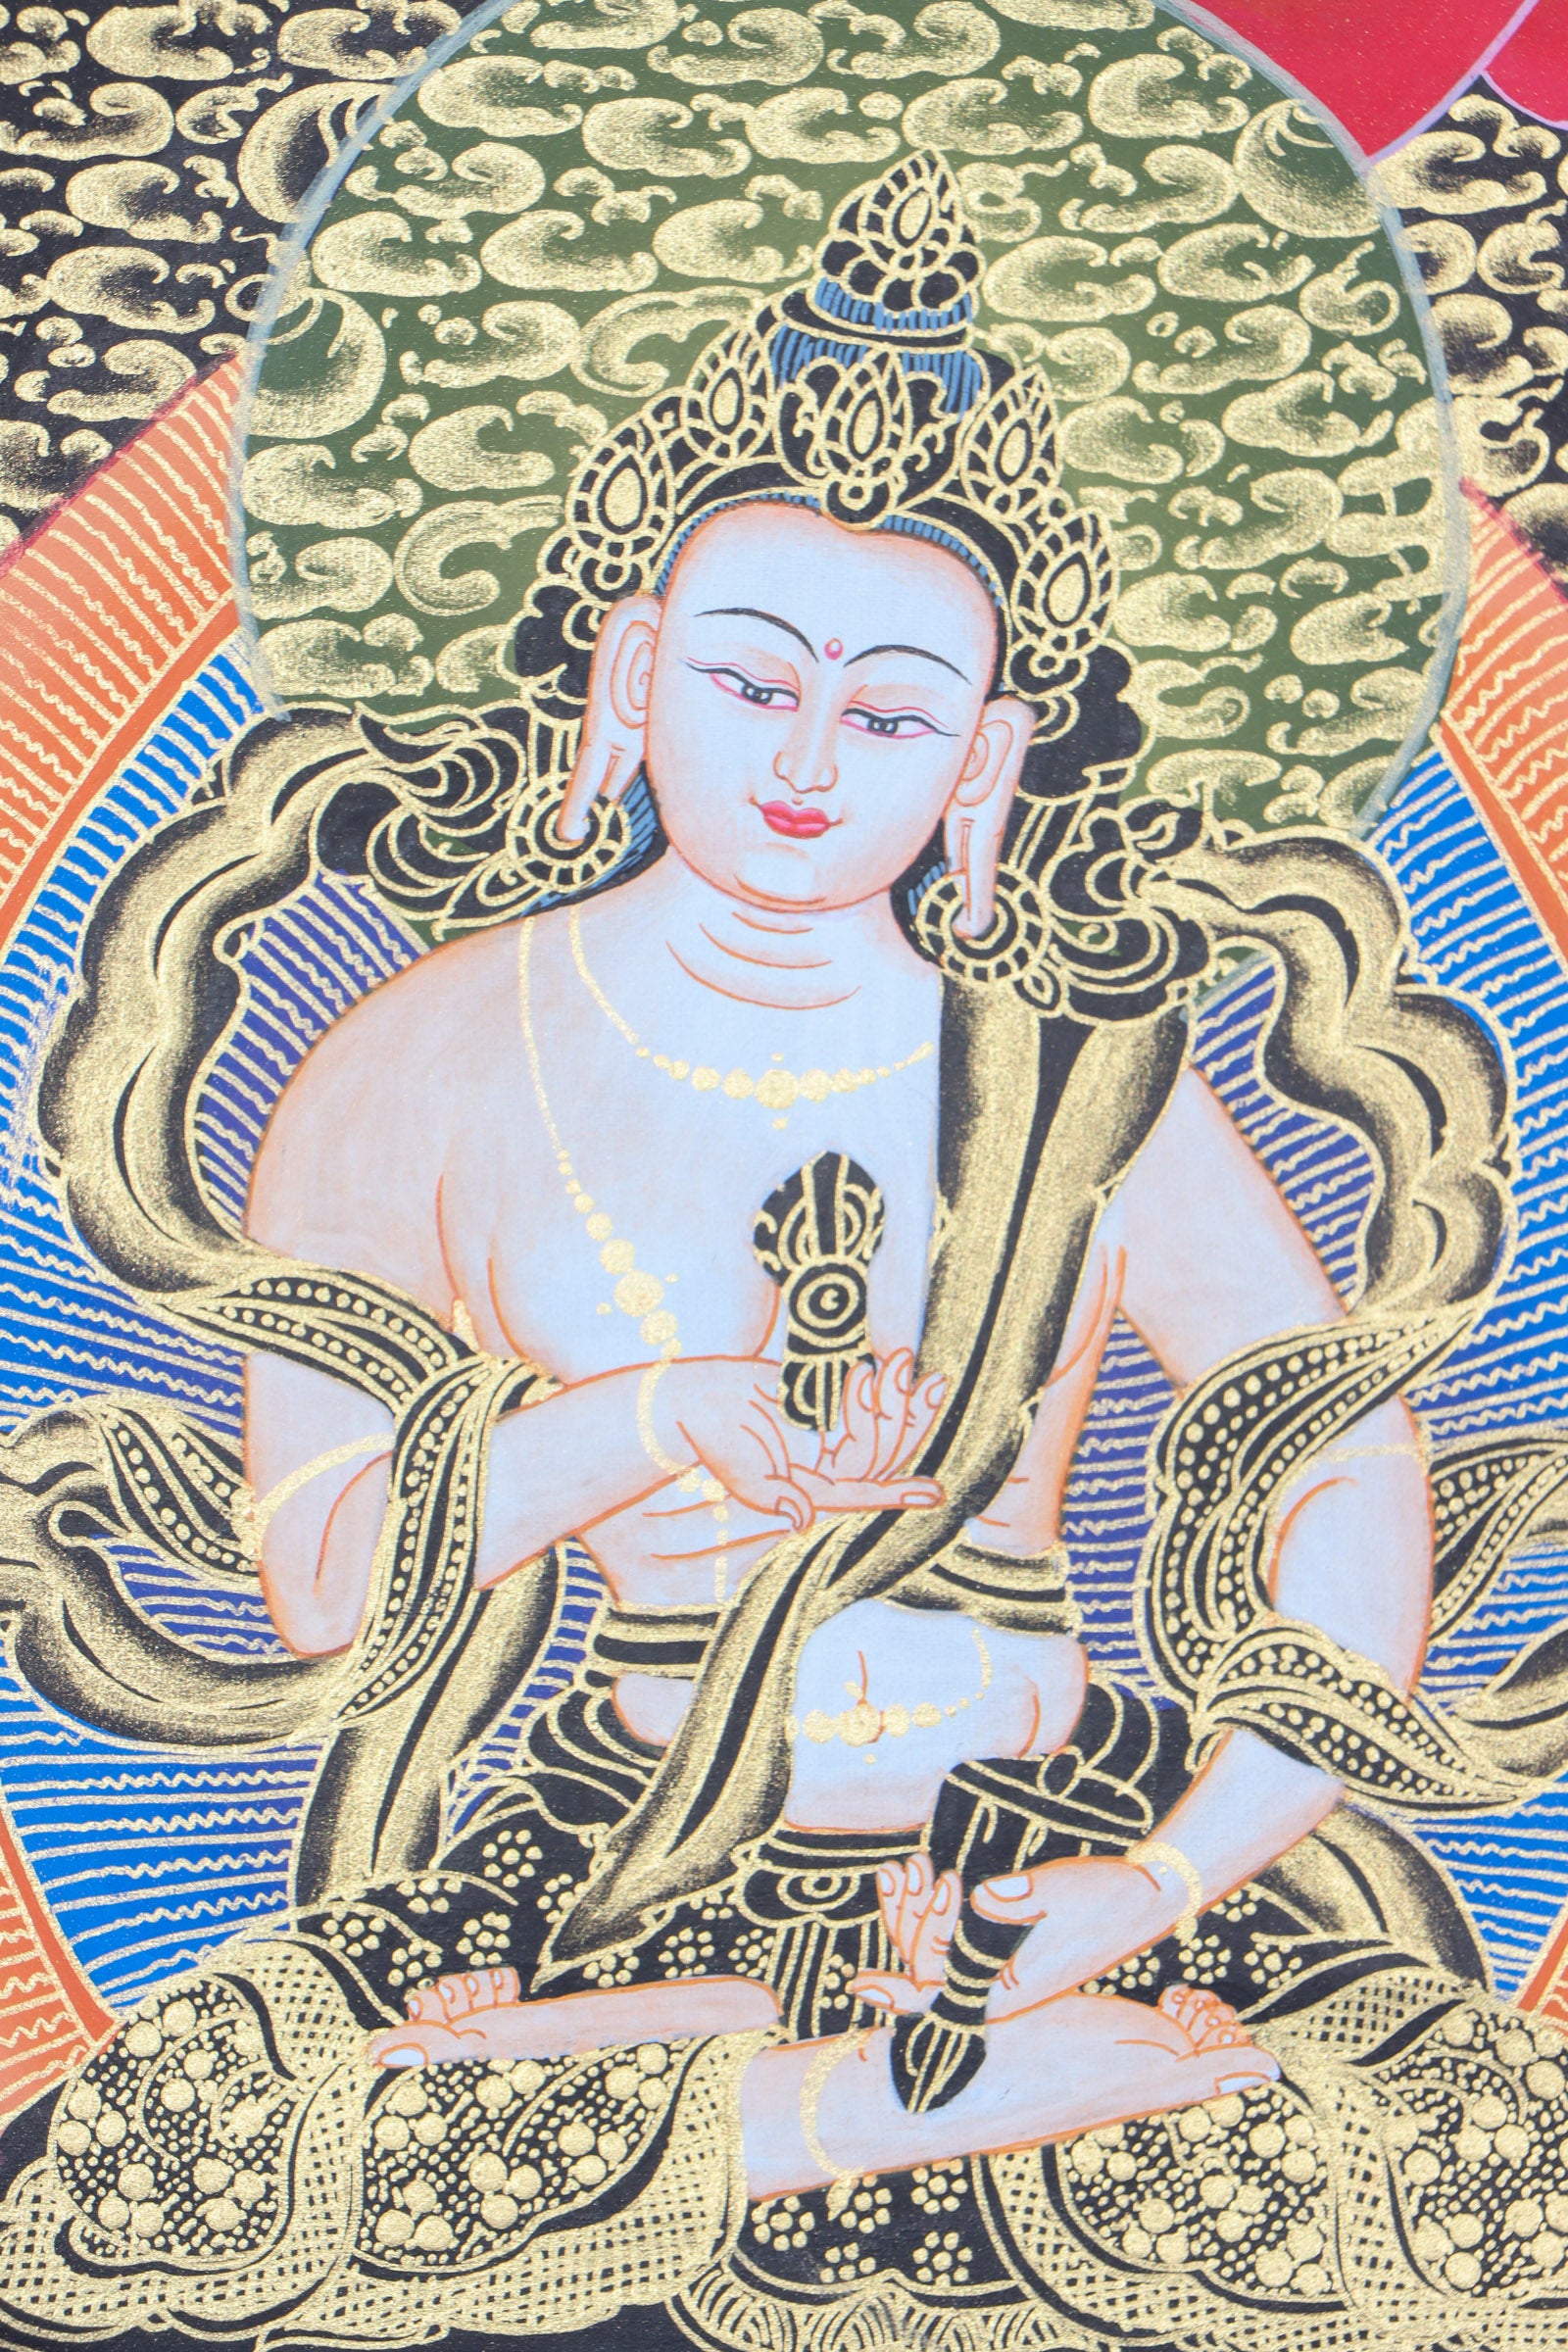  White Tara Thangka for spiritual peace.